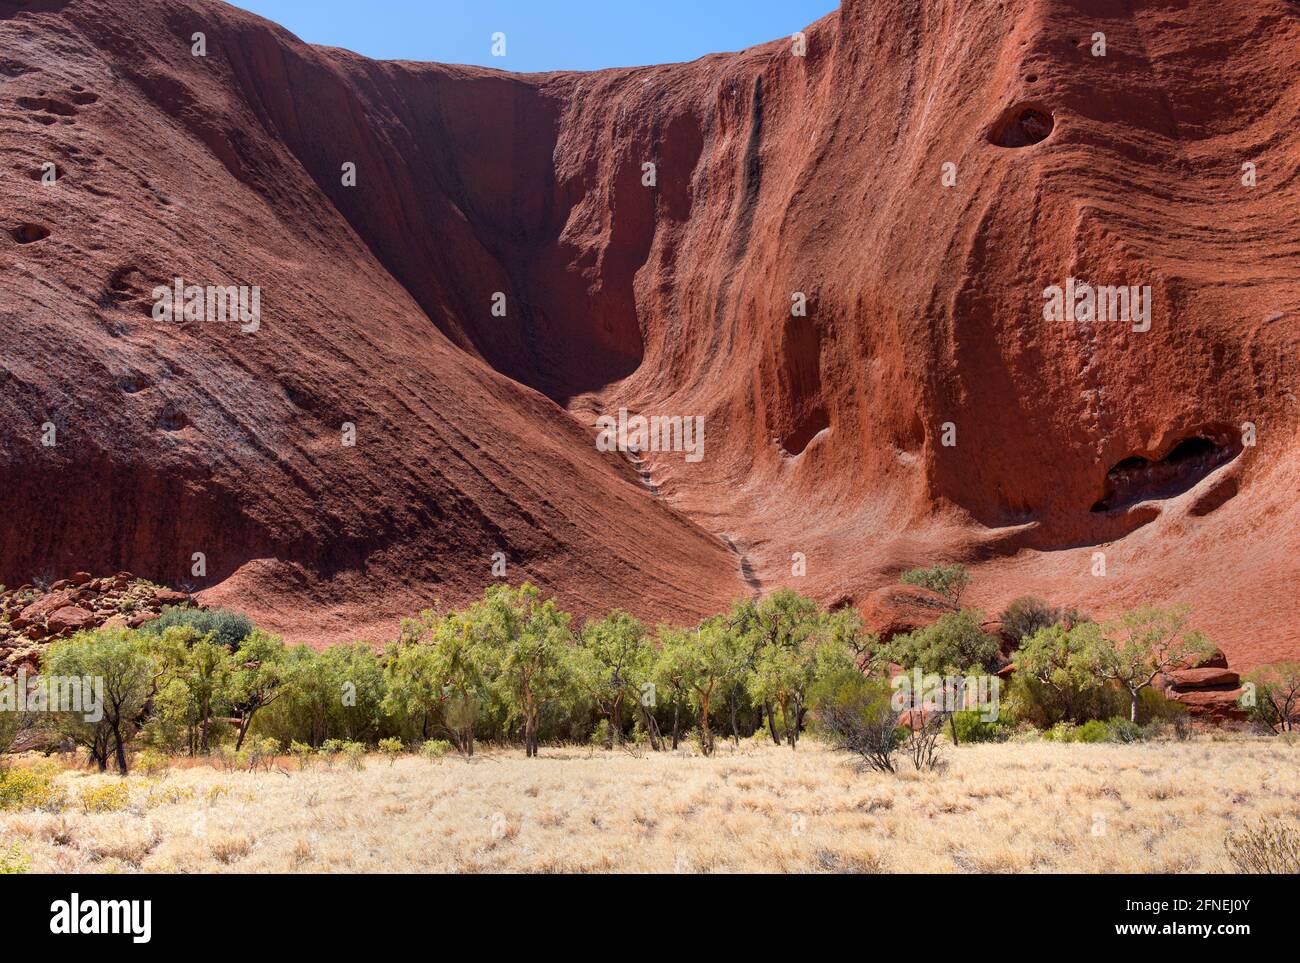 Uluru (Ayers Rock), Northern Territory, Australien, September 2018. Diese imposante geologische Struktur ist der größte Felsmonolith der Welt. Stockfoto